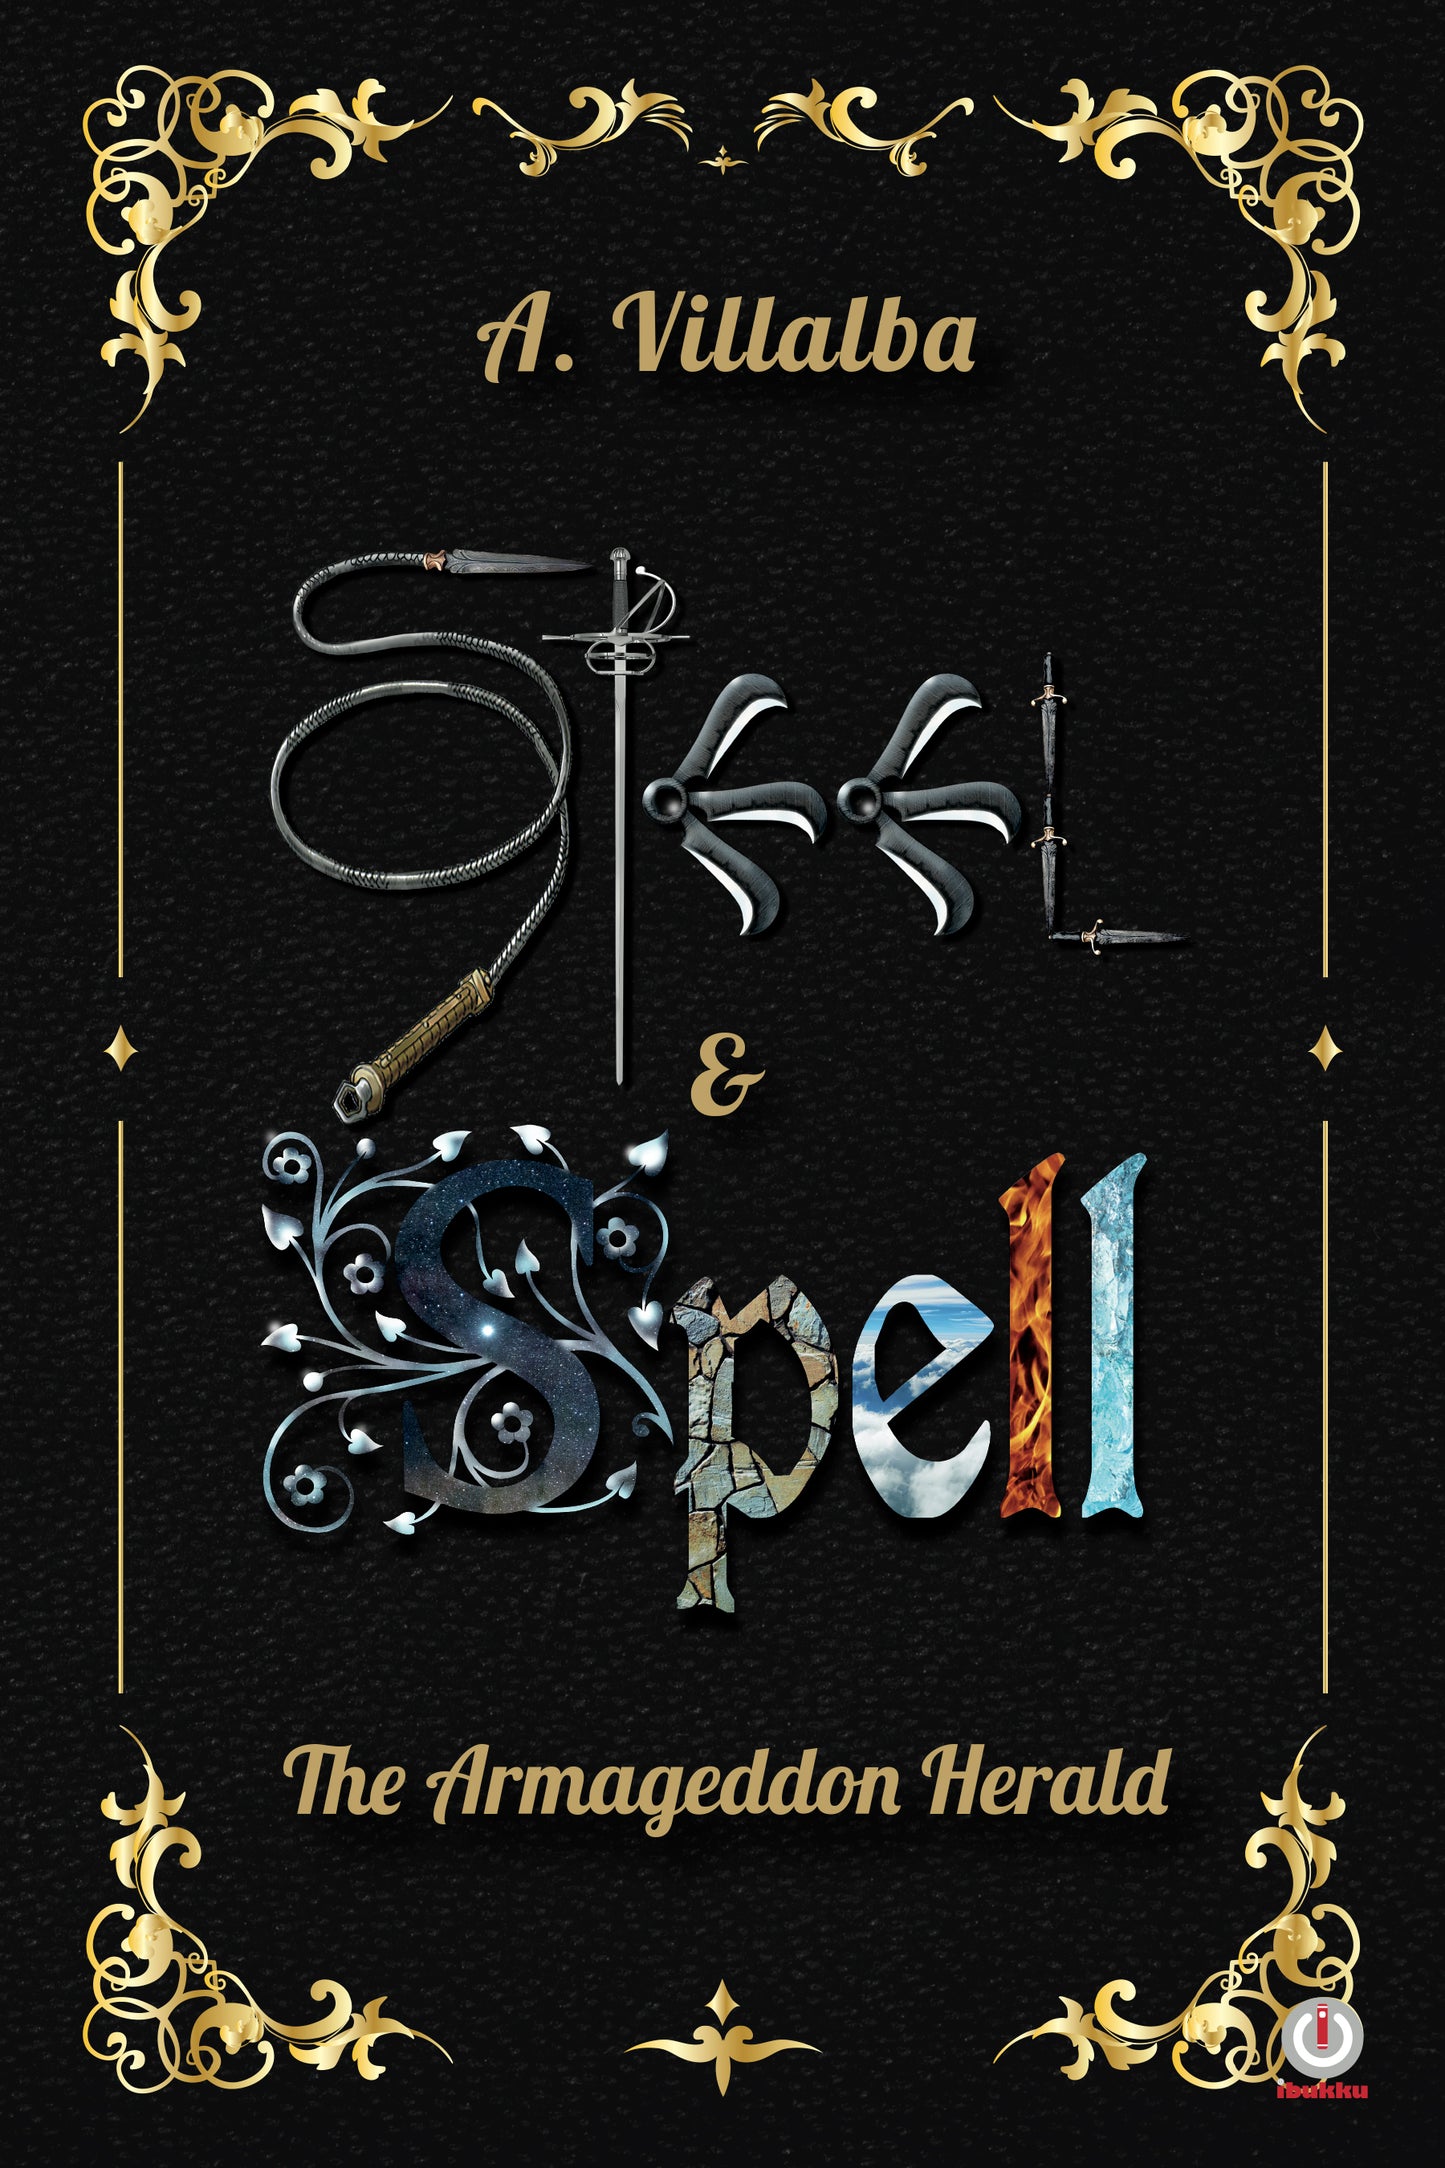 Steel & Spell: The Armageddon Herald